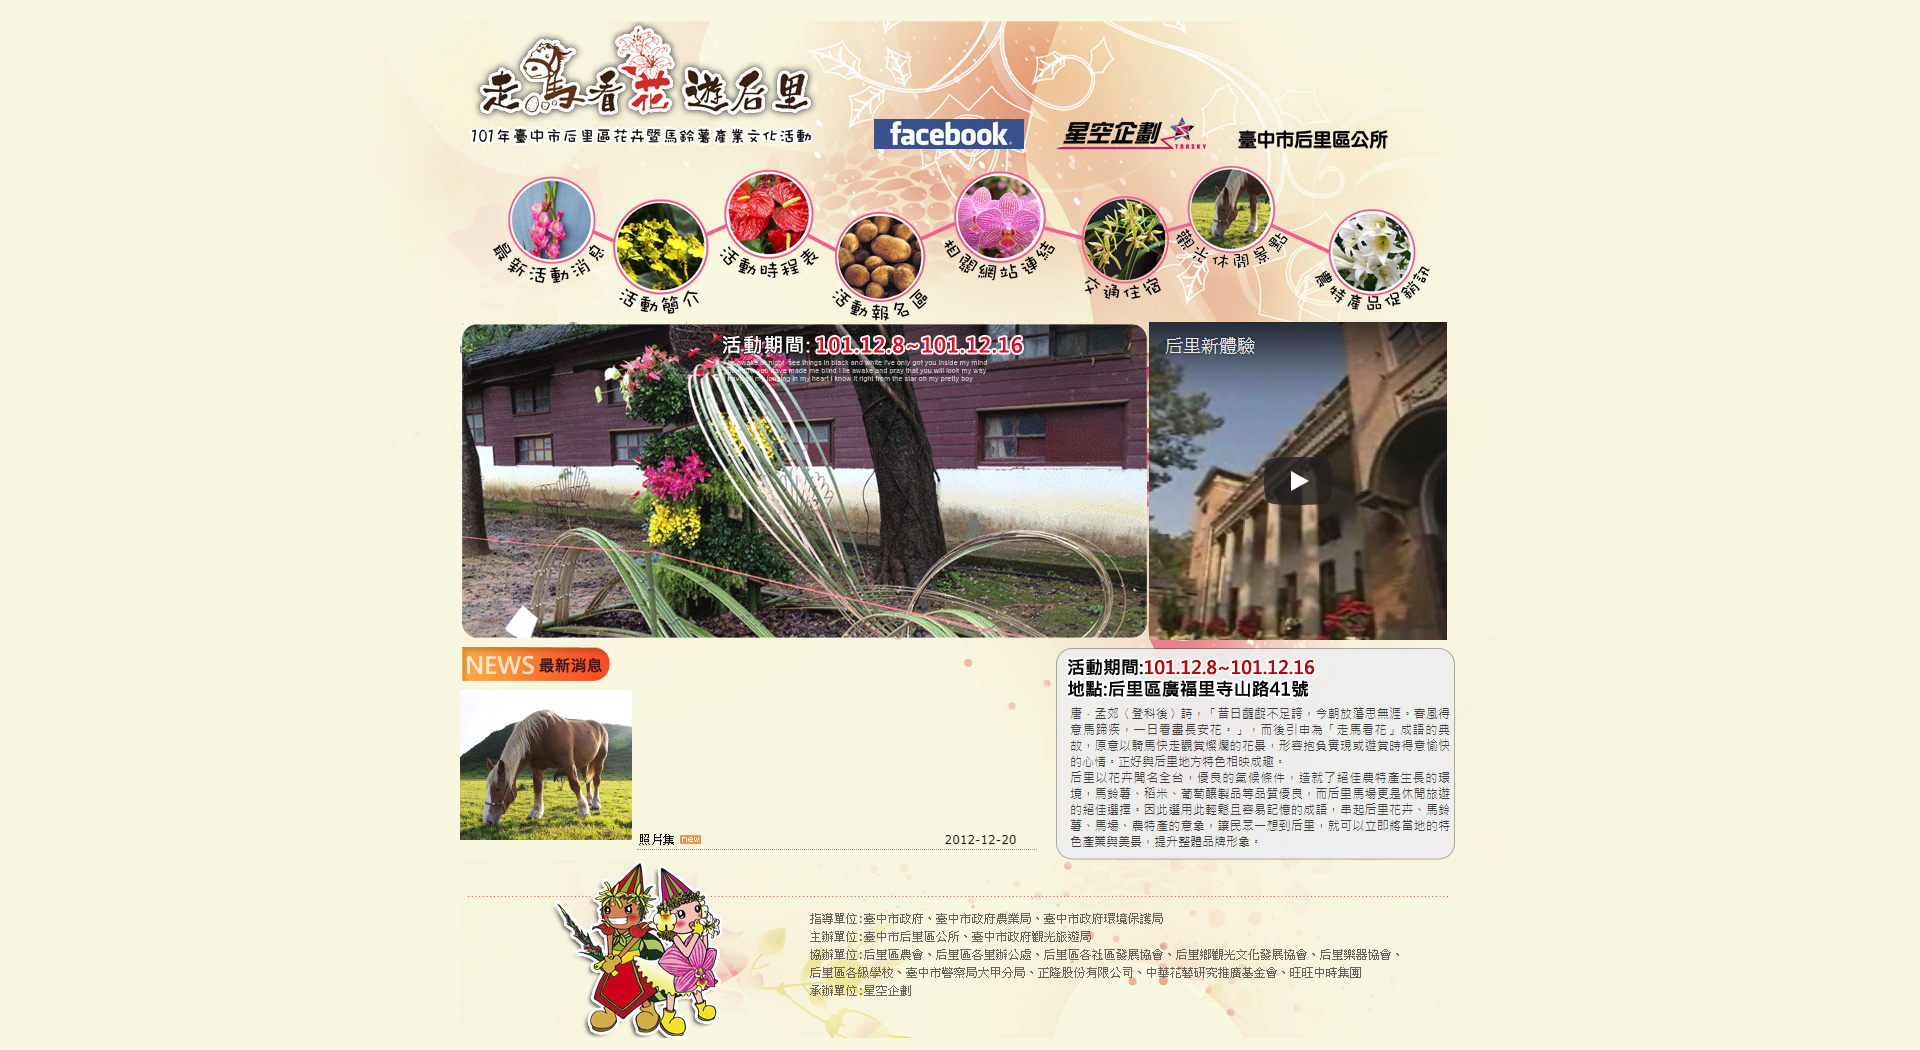 臺中市政府觀光旅遊局花卉馬鈴薯產業網頁設計